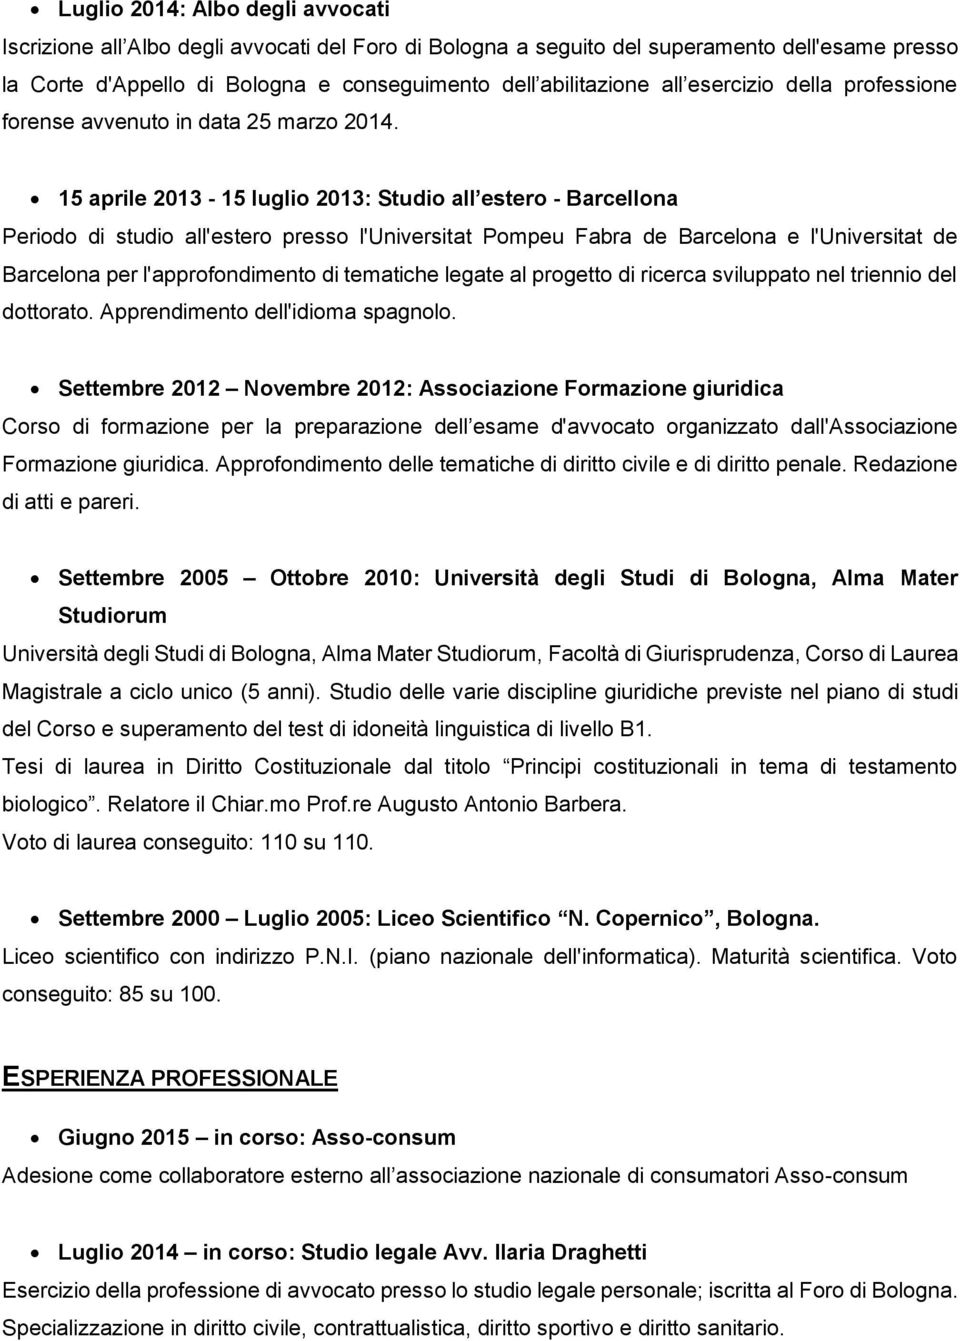 15 aprile 2013-15 luglio 2013: Studio all estero - Barcellona Periodo di studio all'estero presso l'universitat Pompeu Fabra de Barcelona e l'universitat de Barcelona per l'approfondimento di